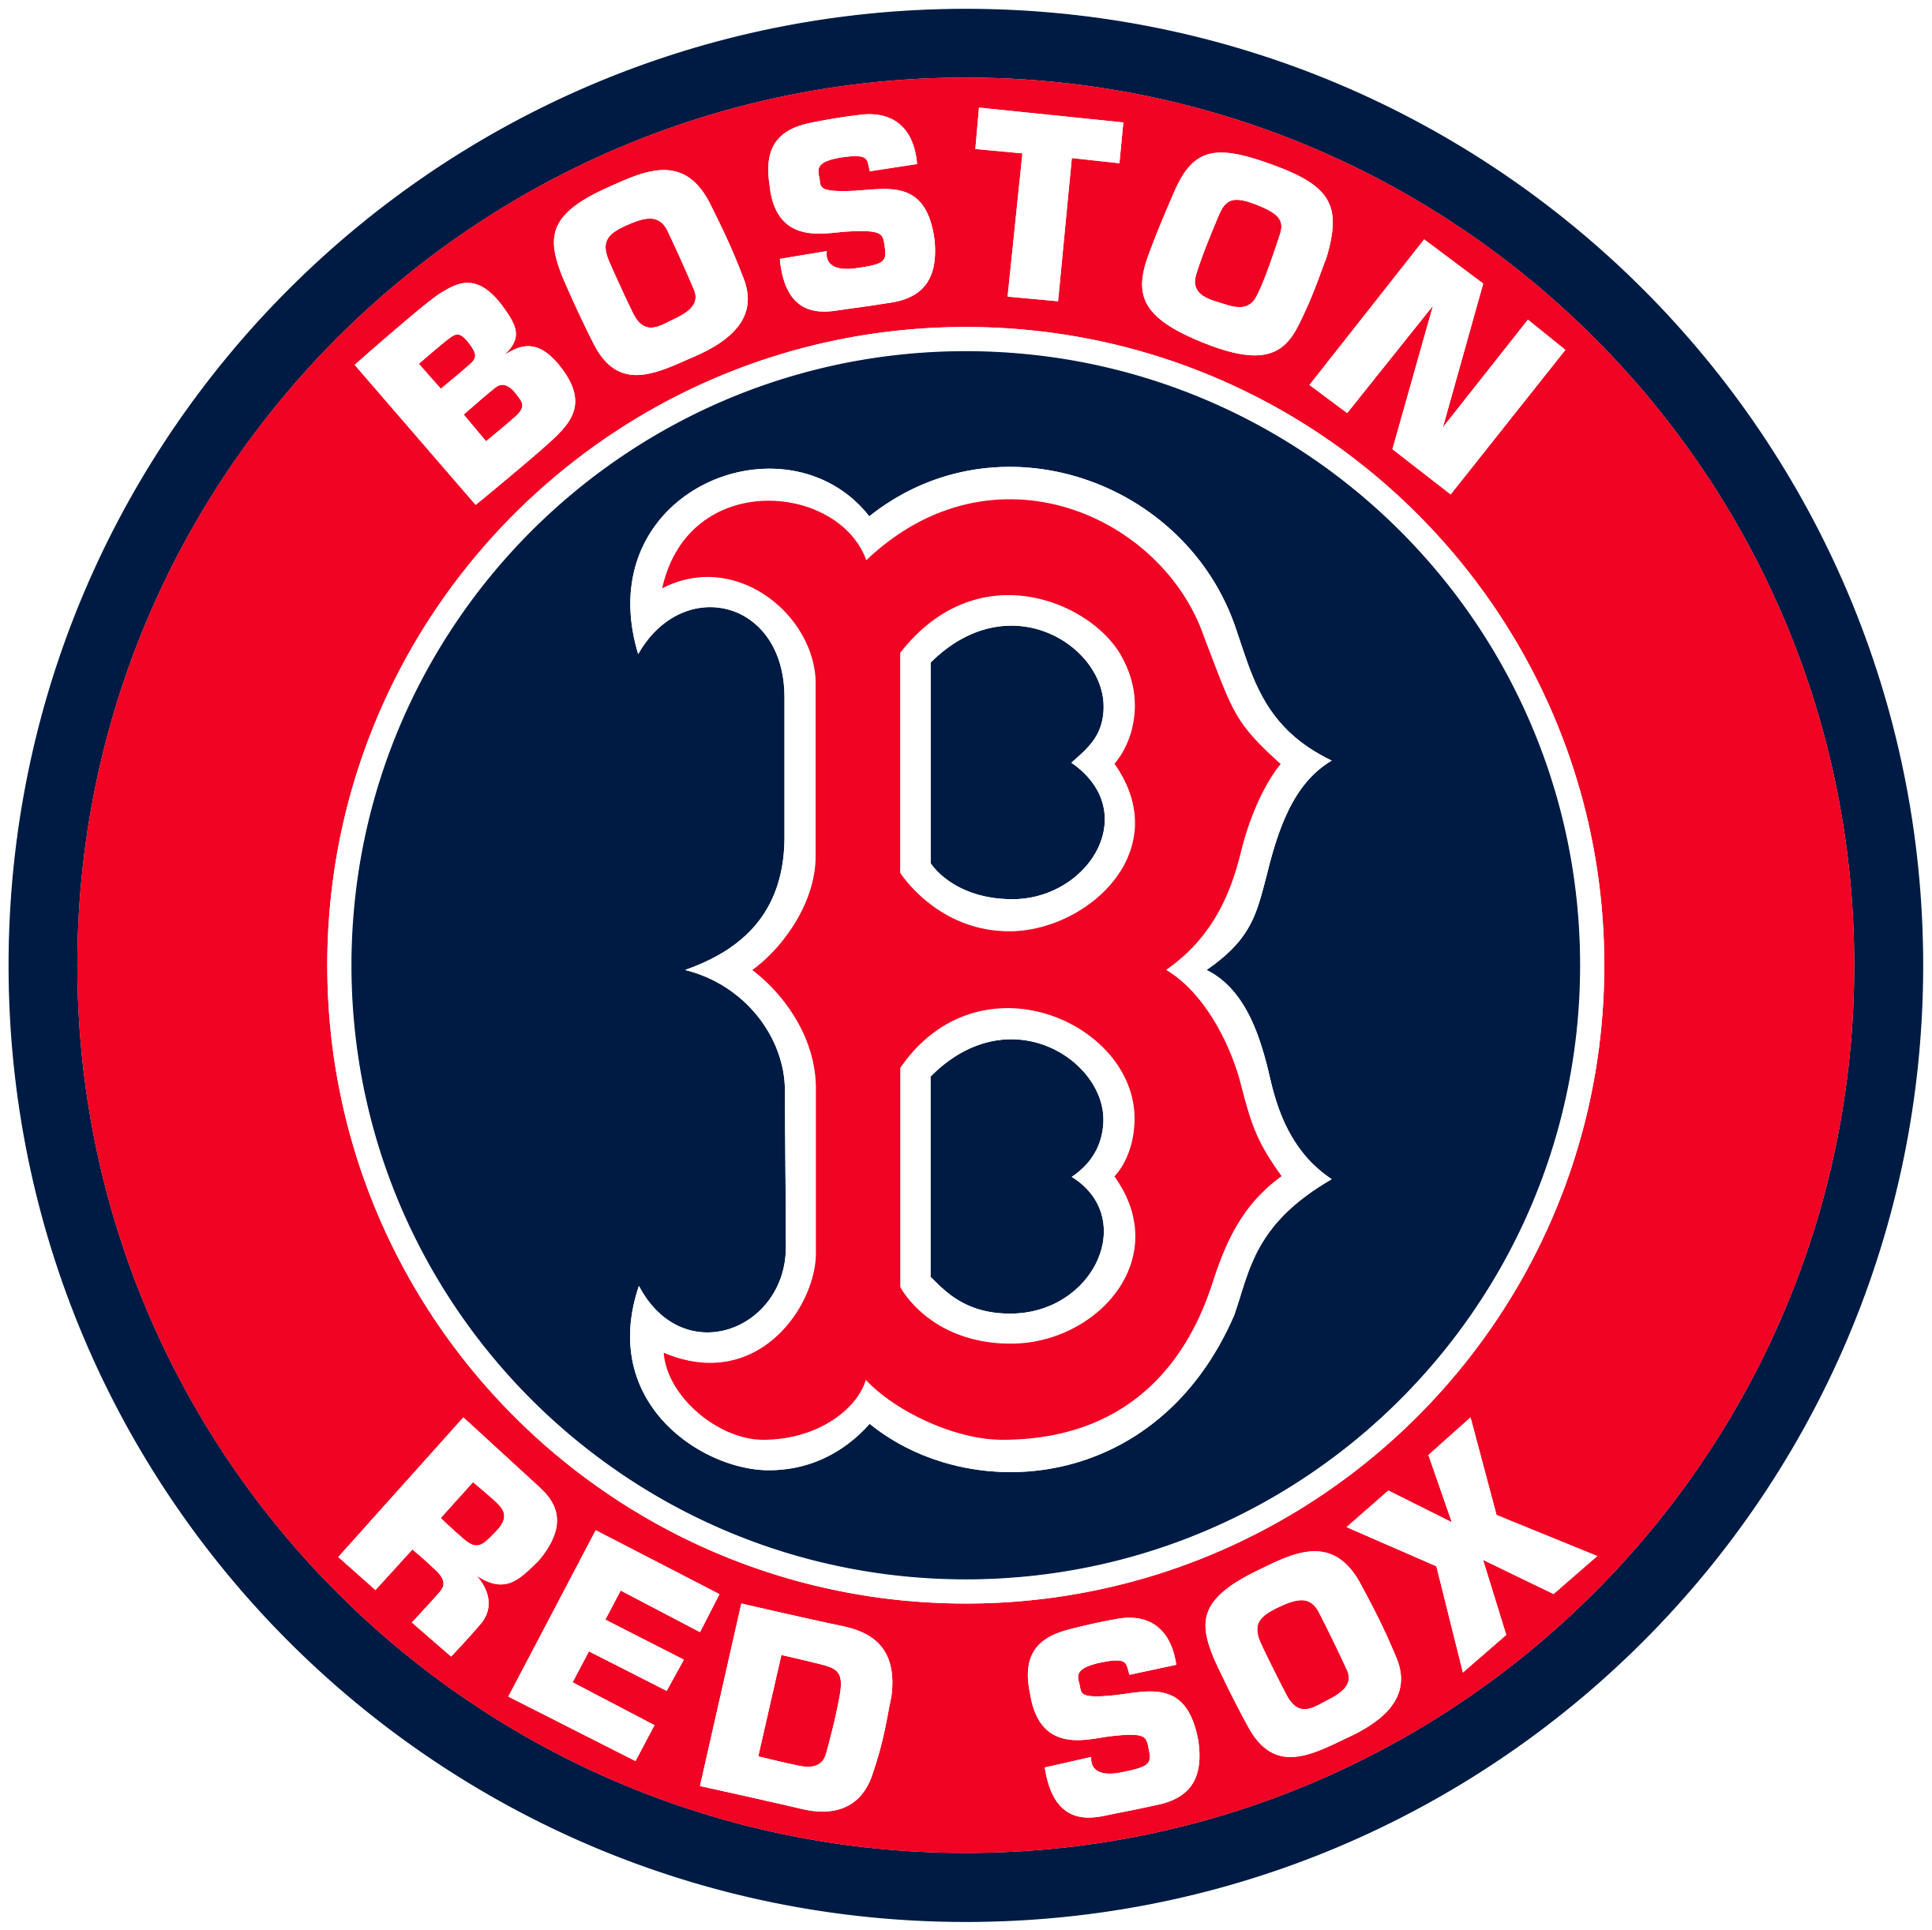 Boston Redsox Flag Logo svg, mlb svg, eps, dxf, png, digital file for – SVG  Sporty